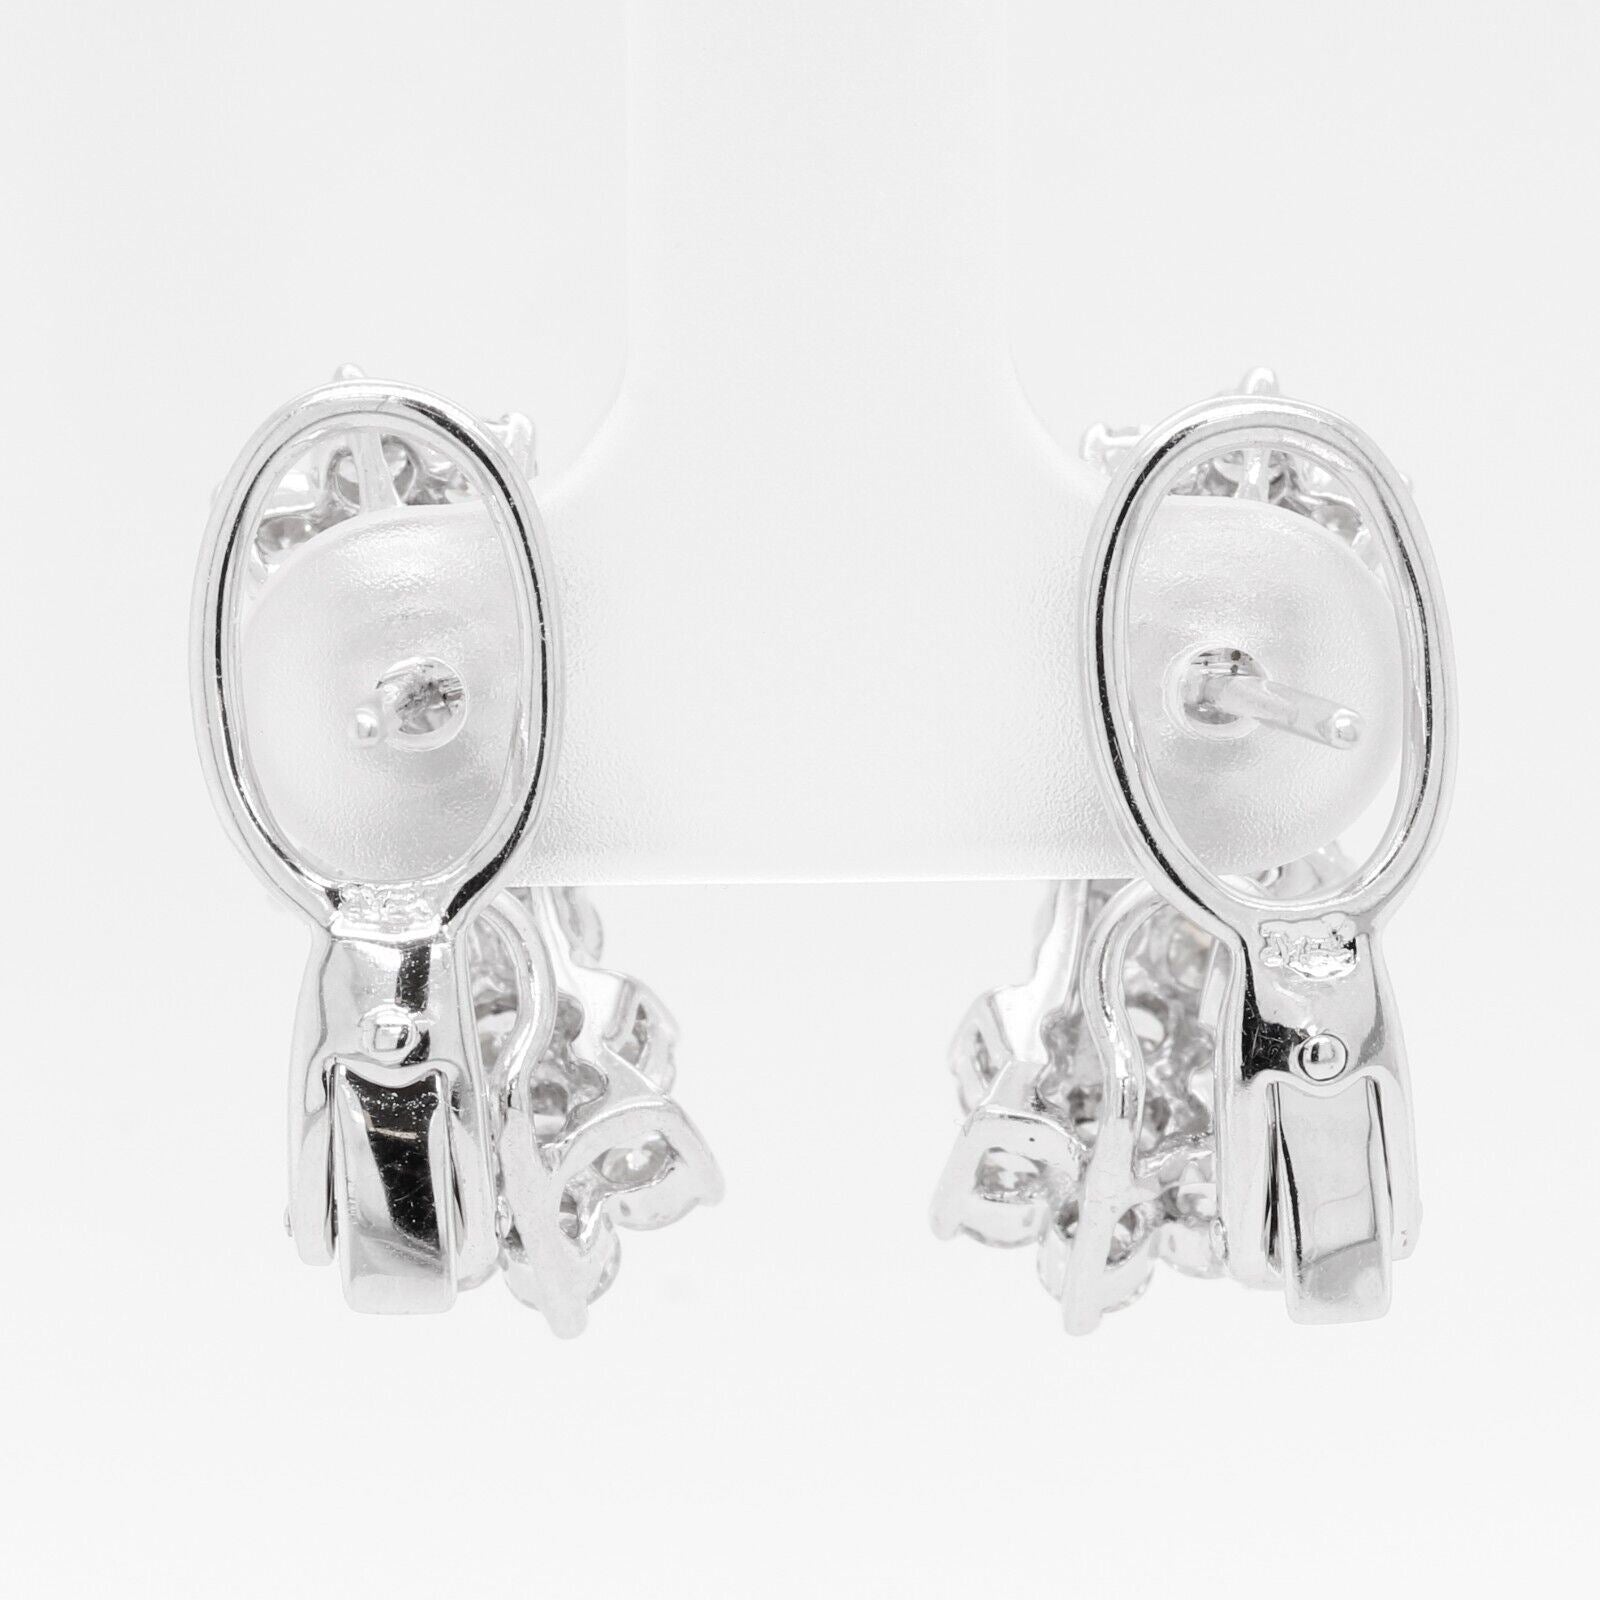 18k White Gold Diamond Triple Cluster Earrings 2.50ctw F VS1 - Omegaback Closure